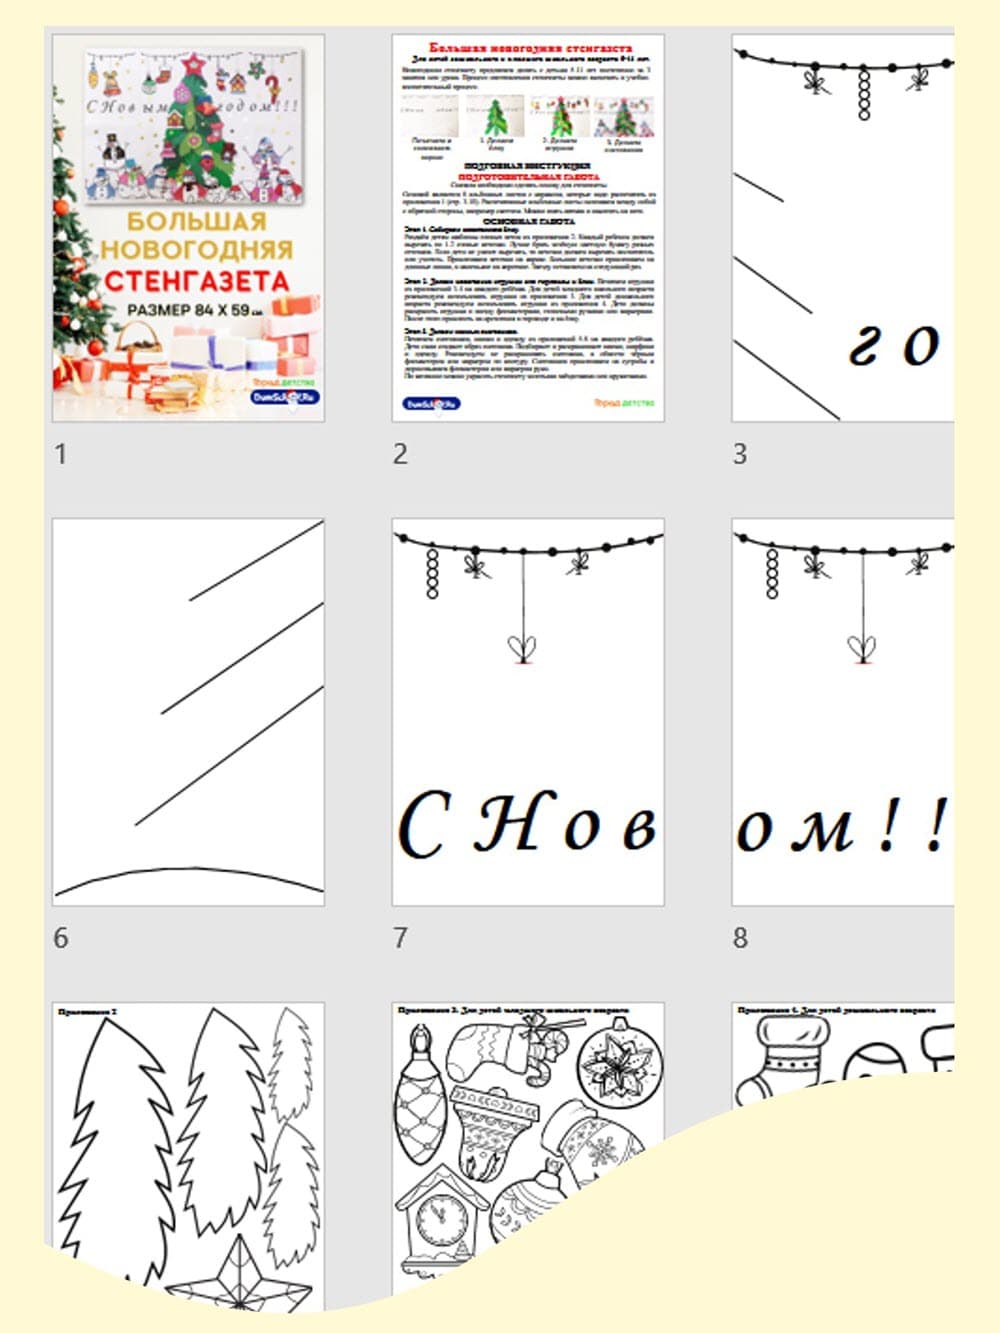 Как сделать стенгазету на Новый год своими руками :: Отдых :: kormstroytorg.ru